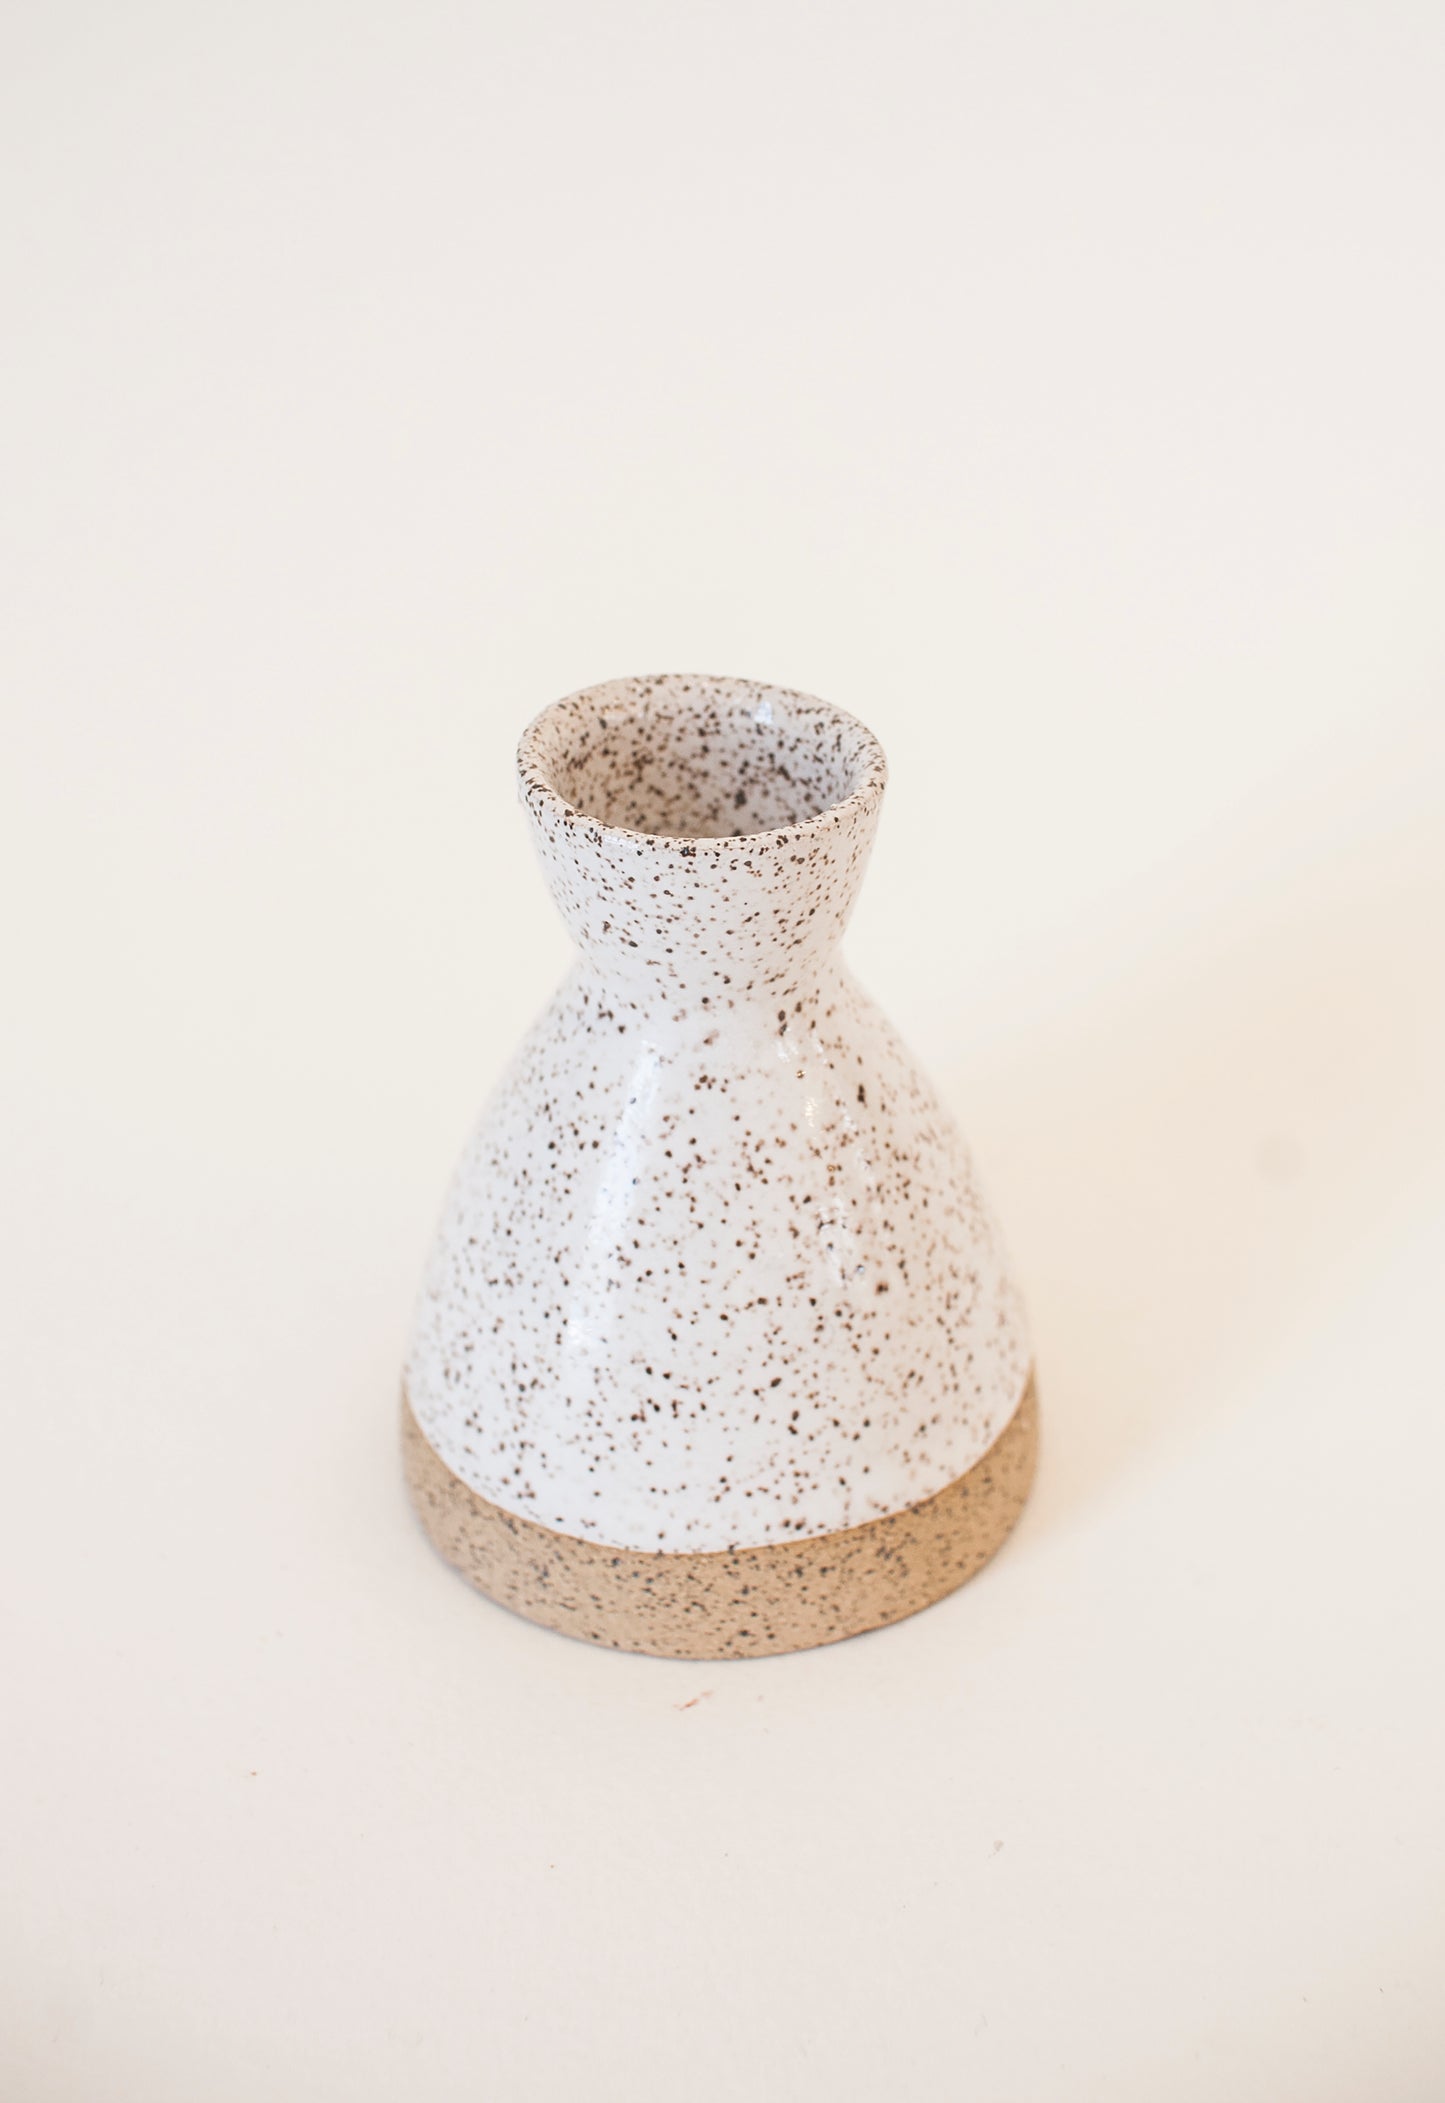 Ceramic Taper Holder in White Glaze/Raw Clay